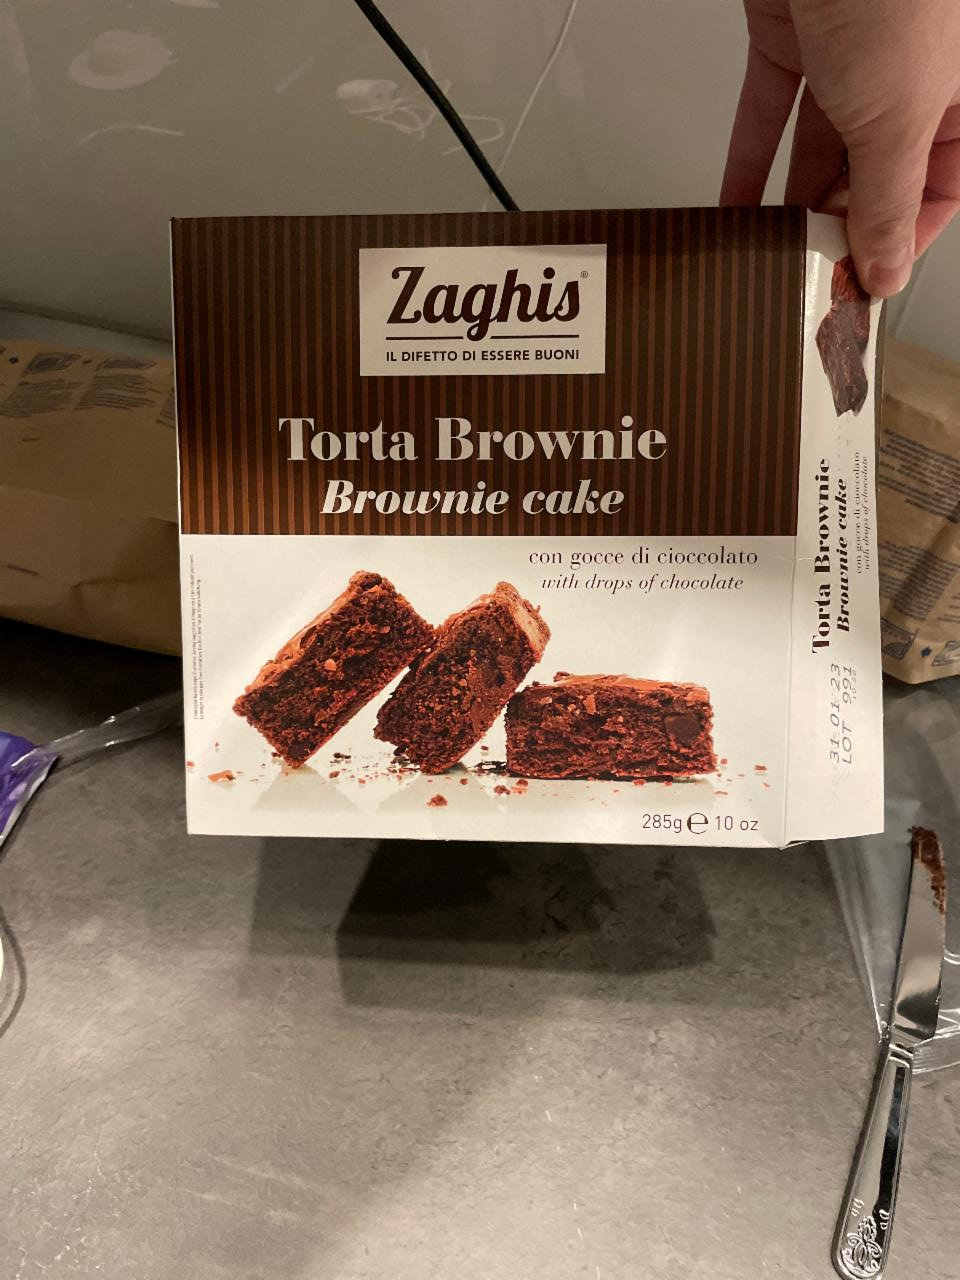 Fotografie - Zaghis Torta Brownie Brownie cake